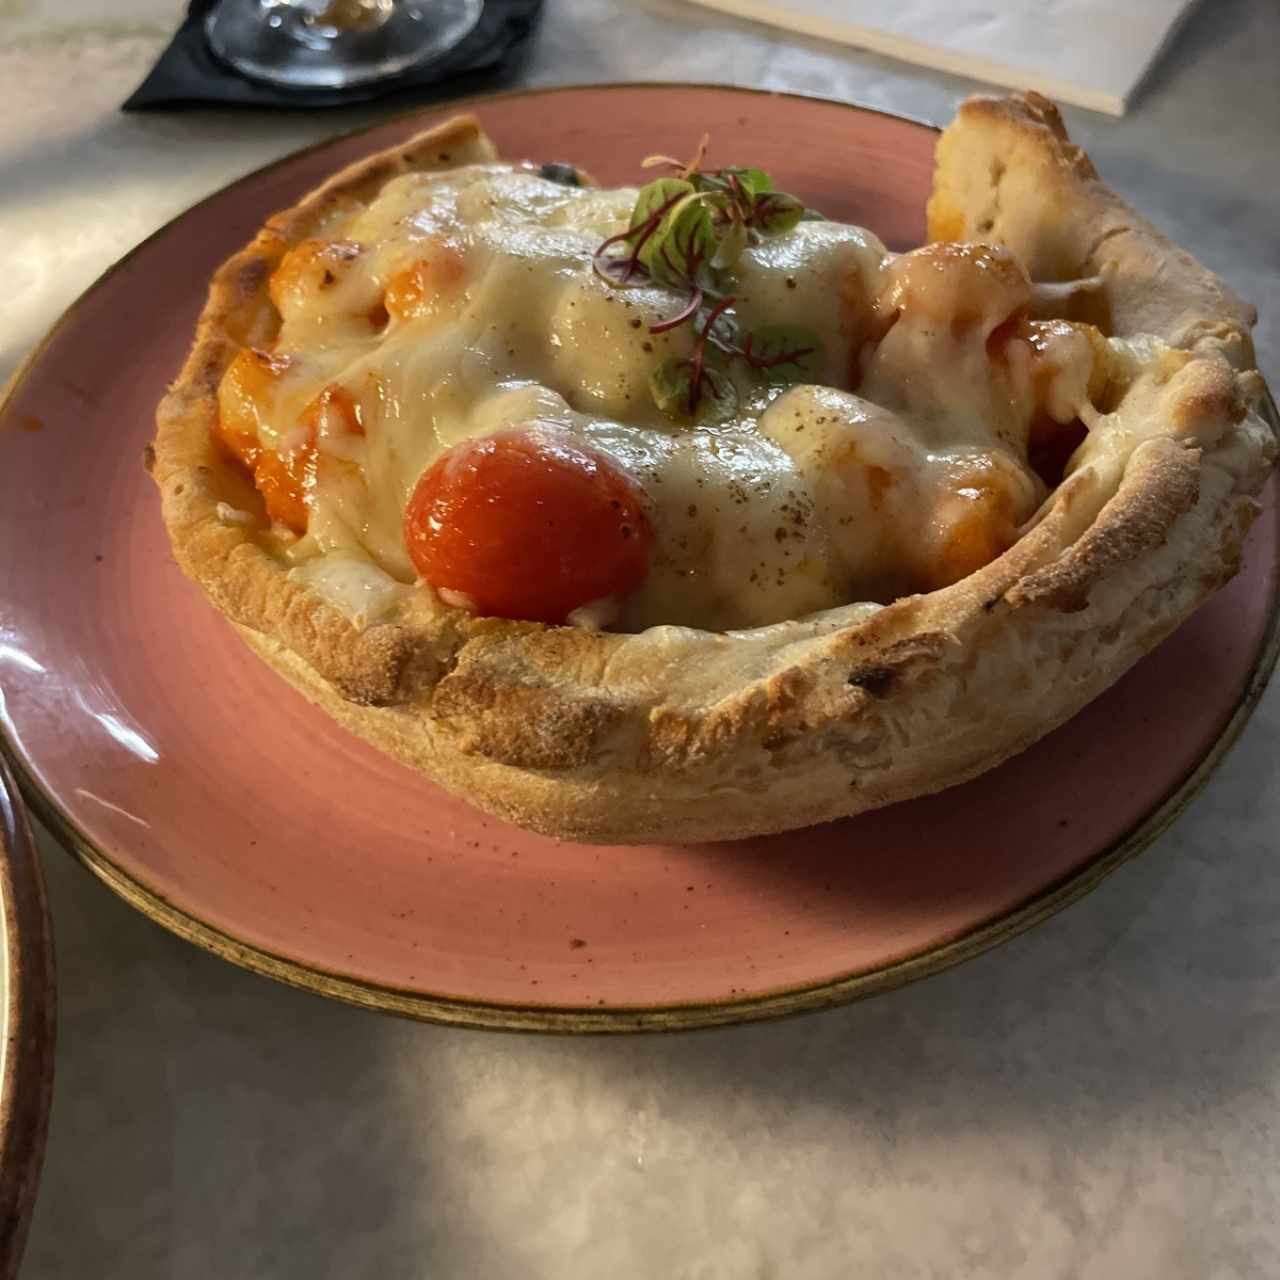 Pastas - Gnocchis alla Sorrentina